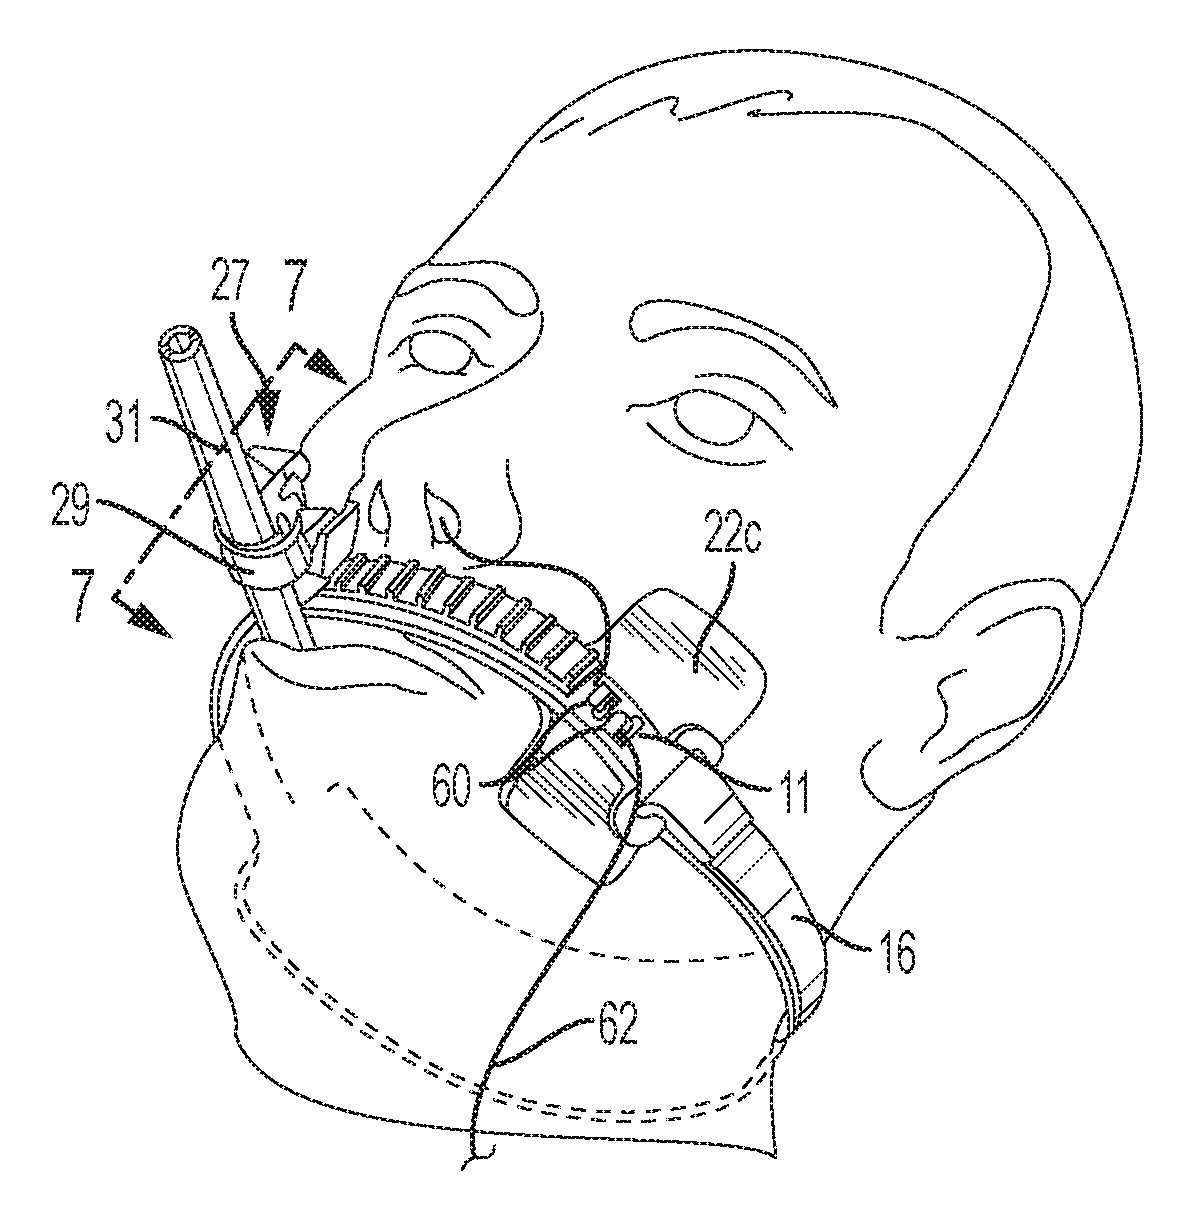 Endotracheal Tube and Nasogastric Tube Attachment Device